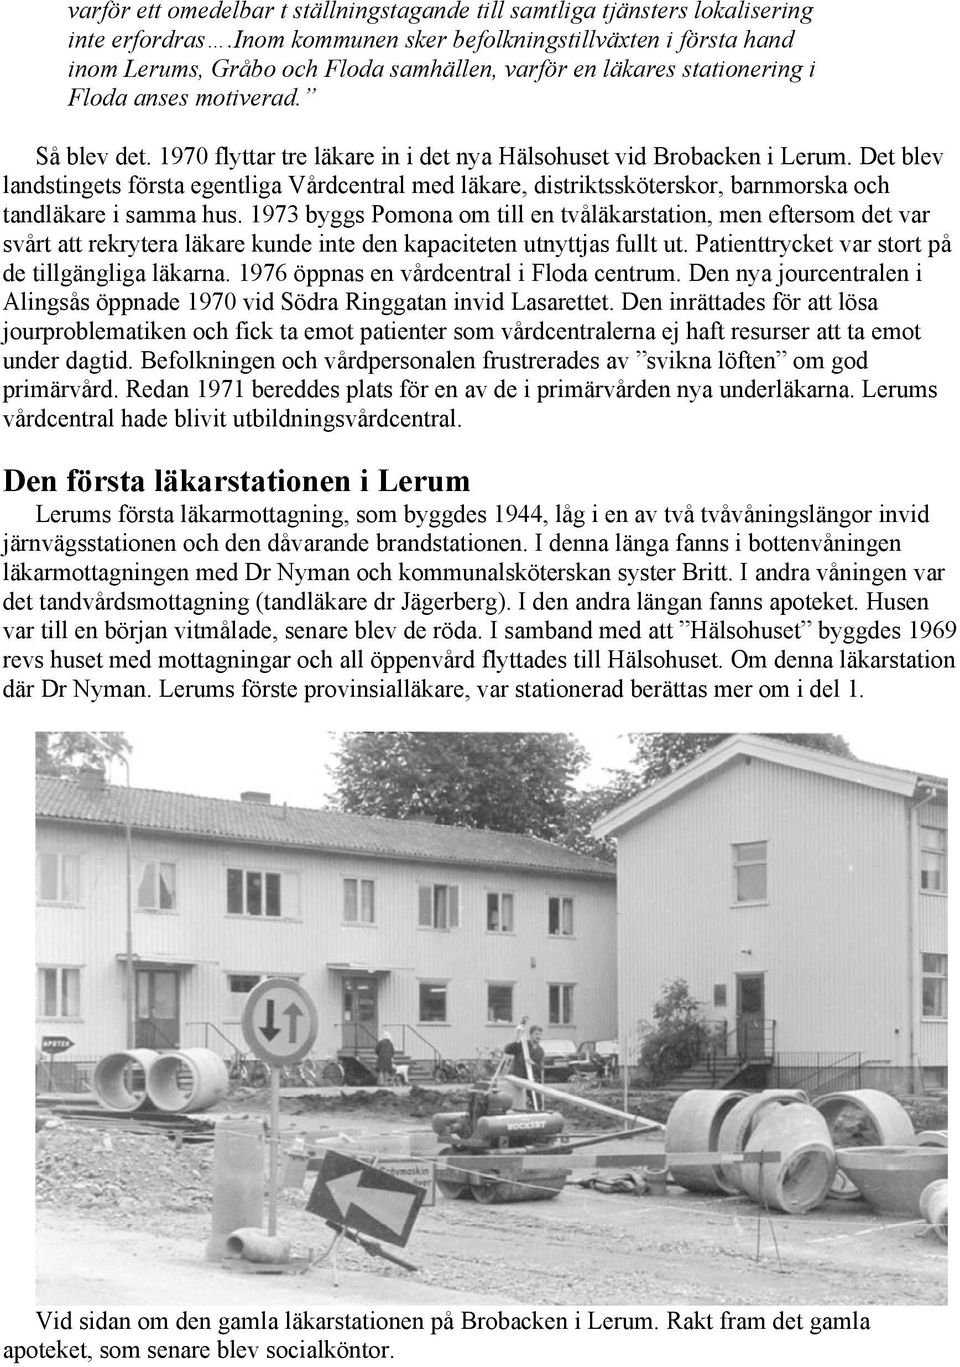 1970 flyttar tre läkare in i det nya Hälsohuset vid Brobacken i Lerum. Det blev landstingets första egentliga Vårdcentral med läkare, distriktssköterskor, barnmorska och tandläkare i samma hus.